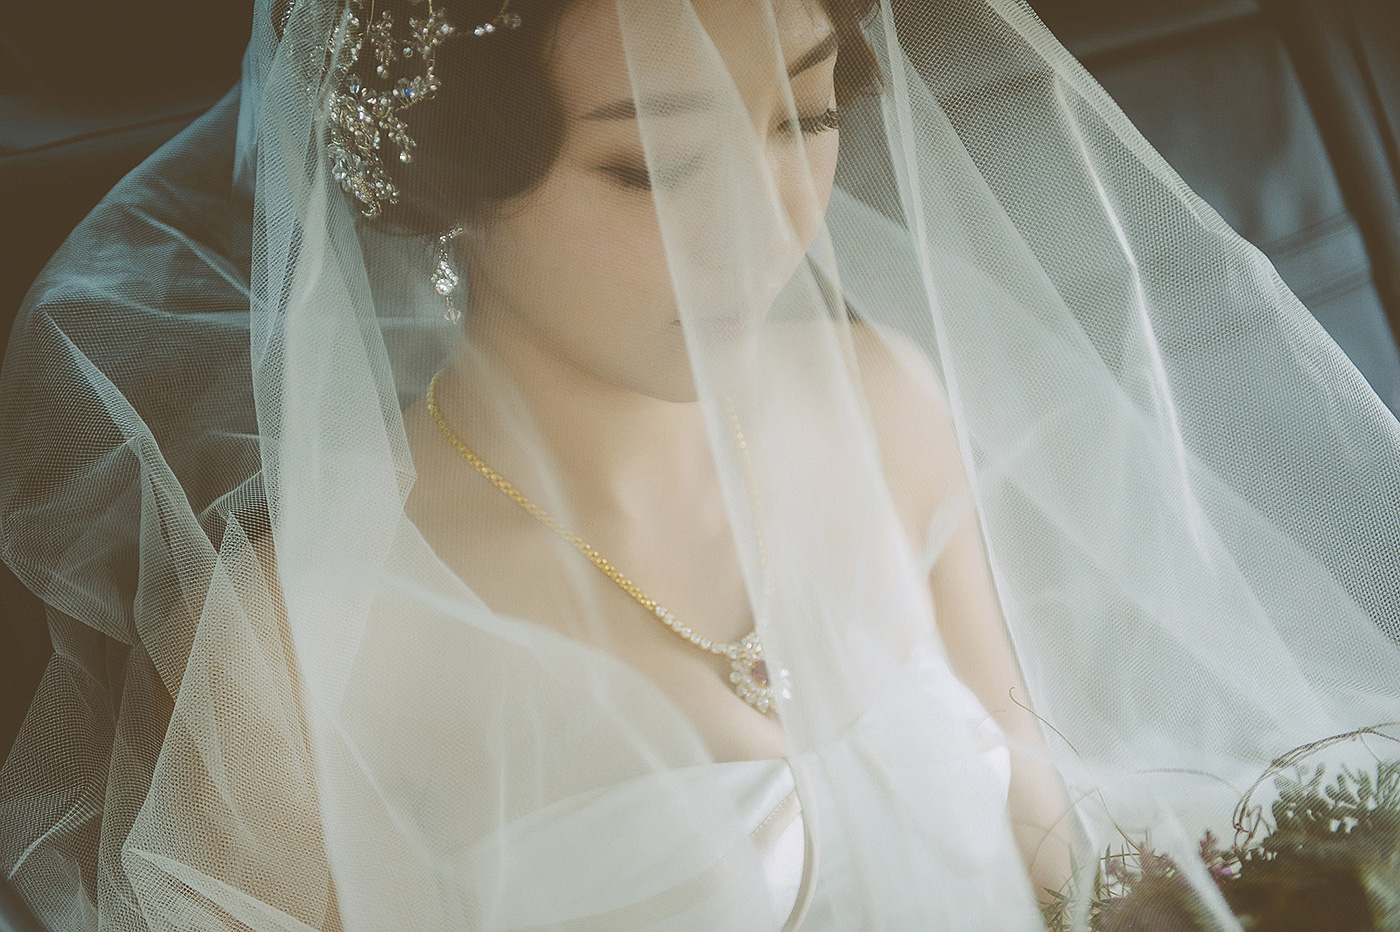 nickchang_wedding_finart-32